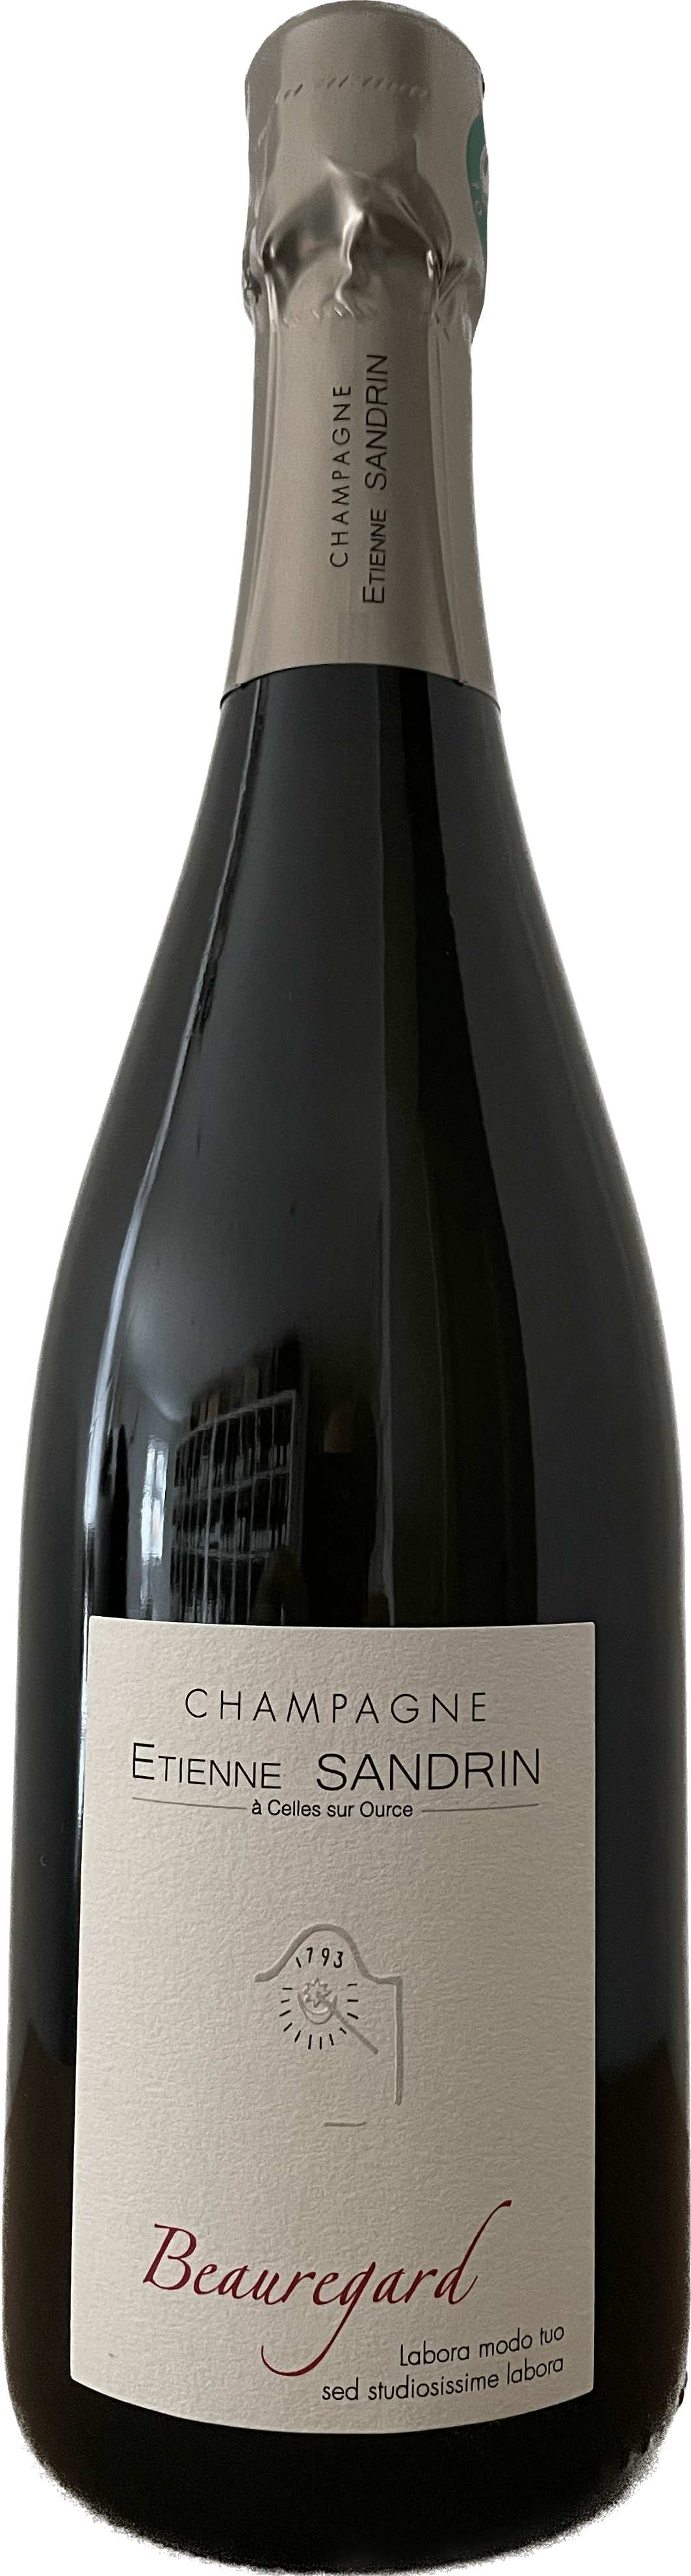 Champagne Etienne Sandrin Beauregard 2019